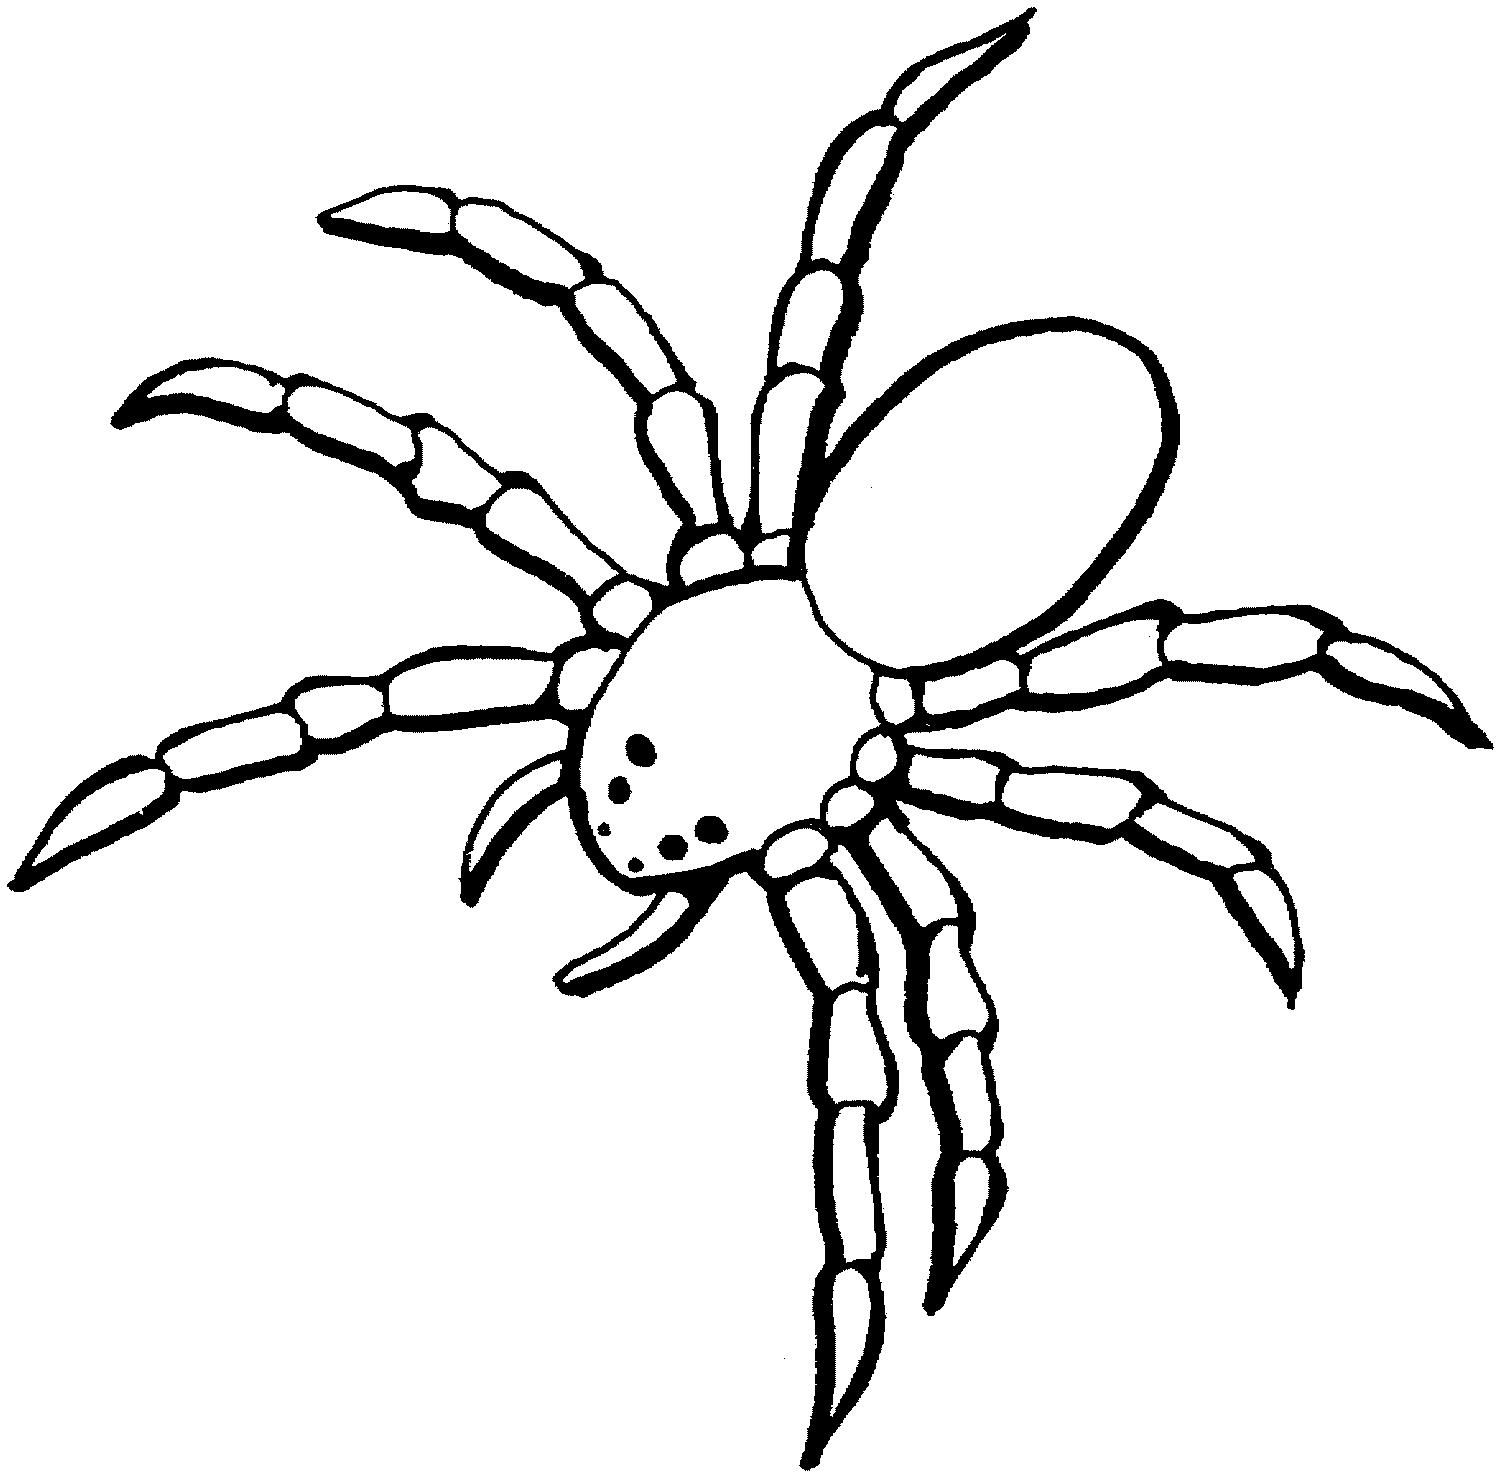 free cartoon spider clip art - photo #36